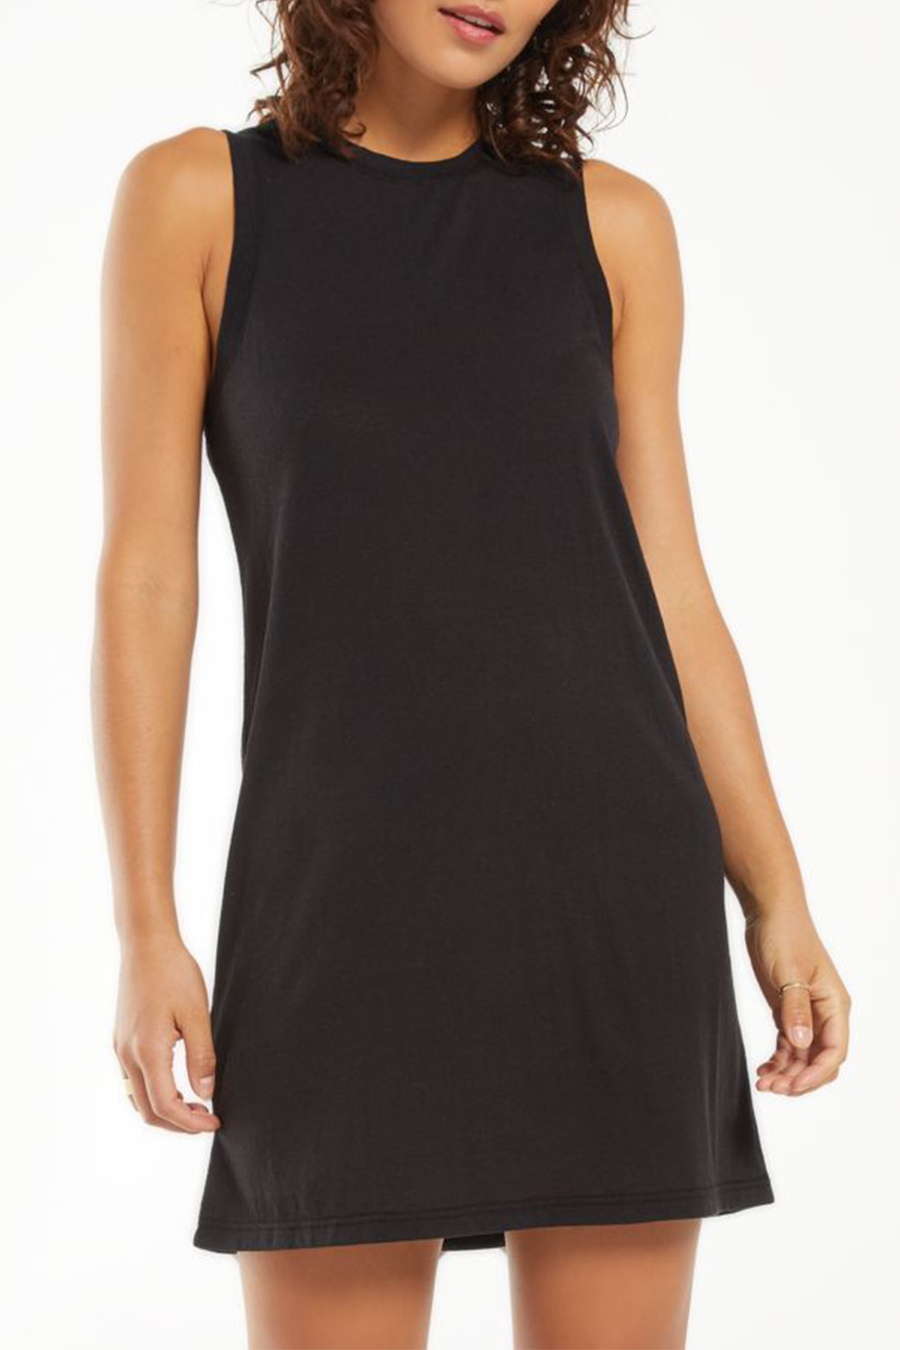 Lex Triblend Dress | Black - Main Image Number 1 of 1